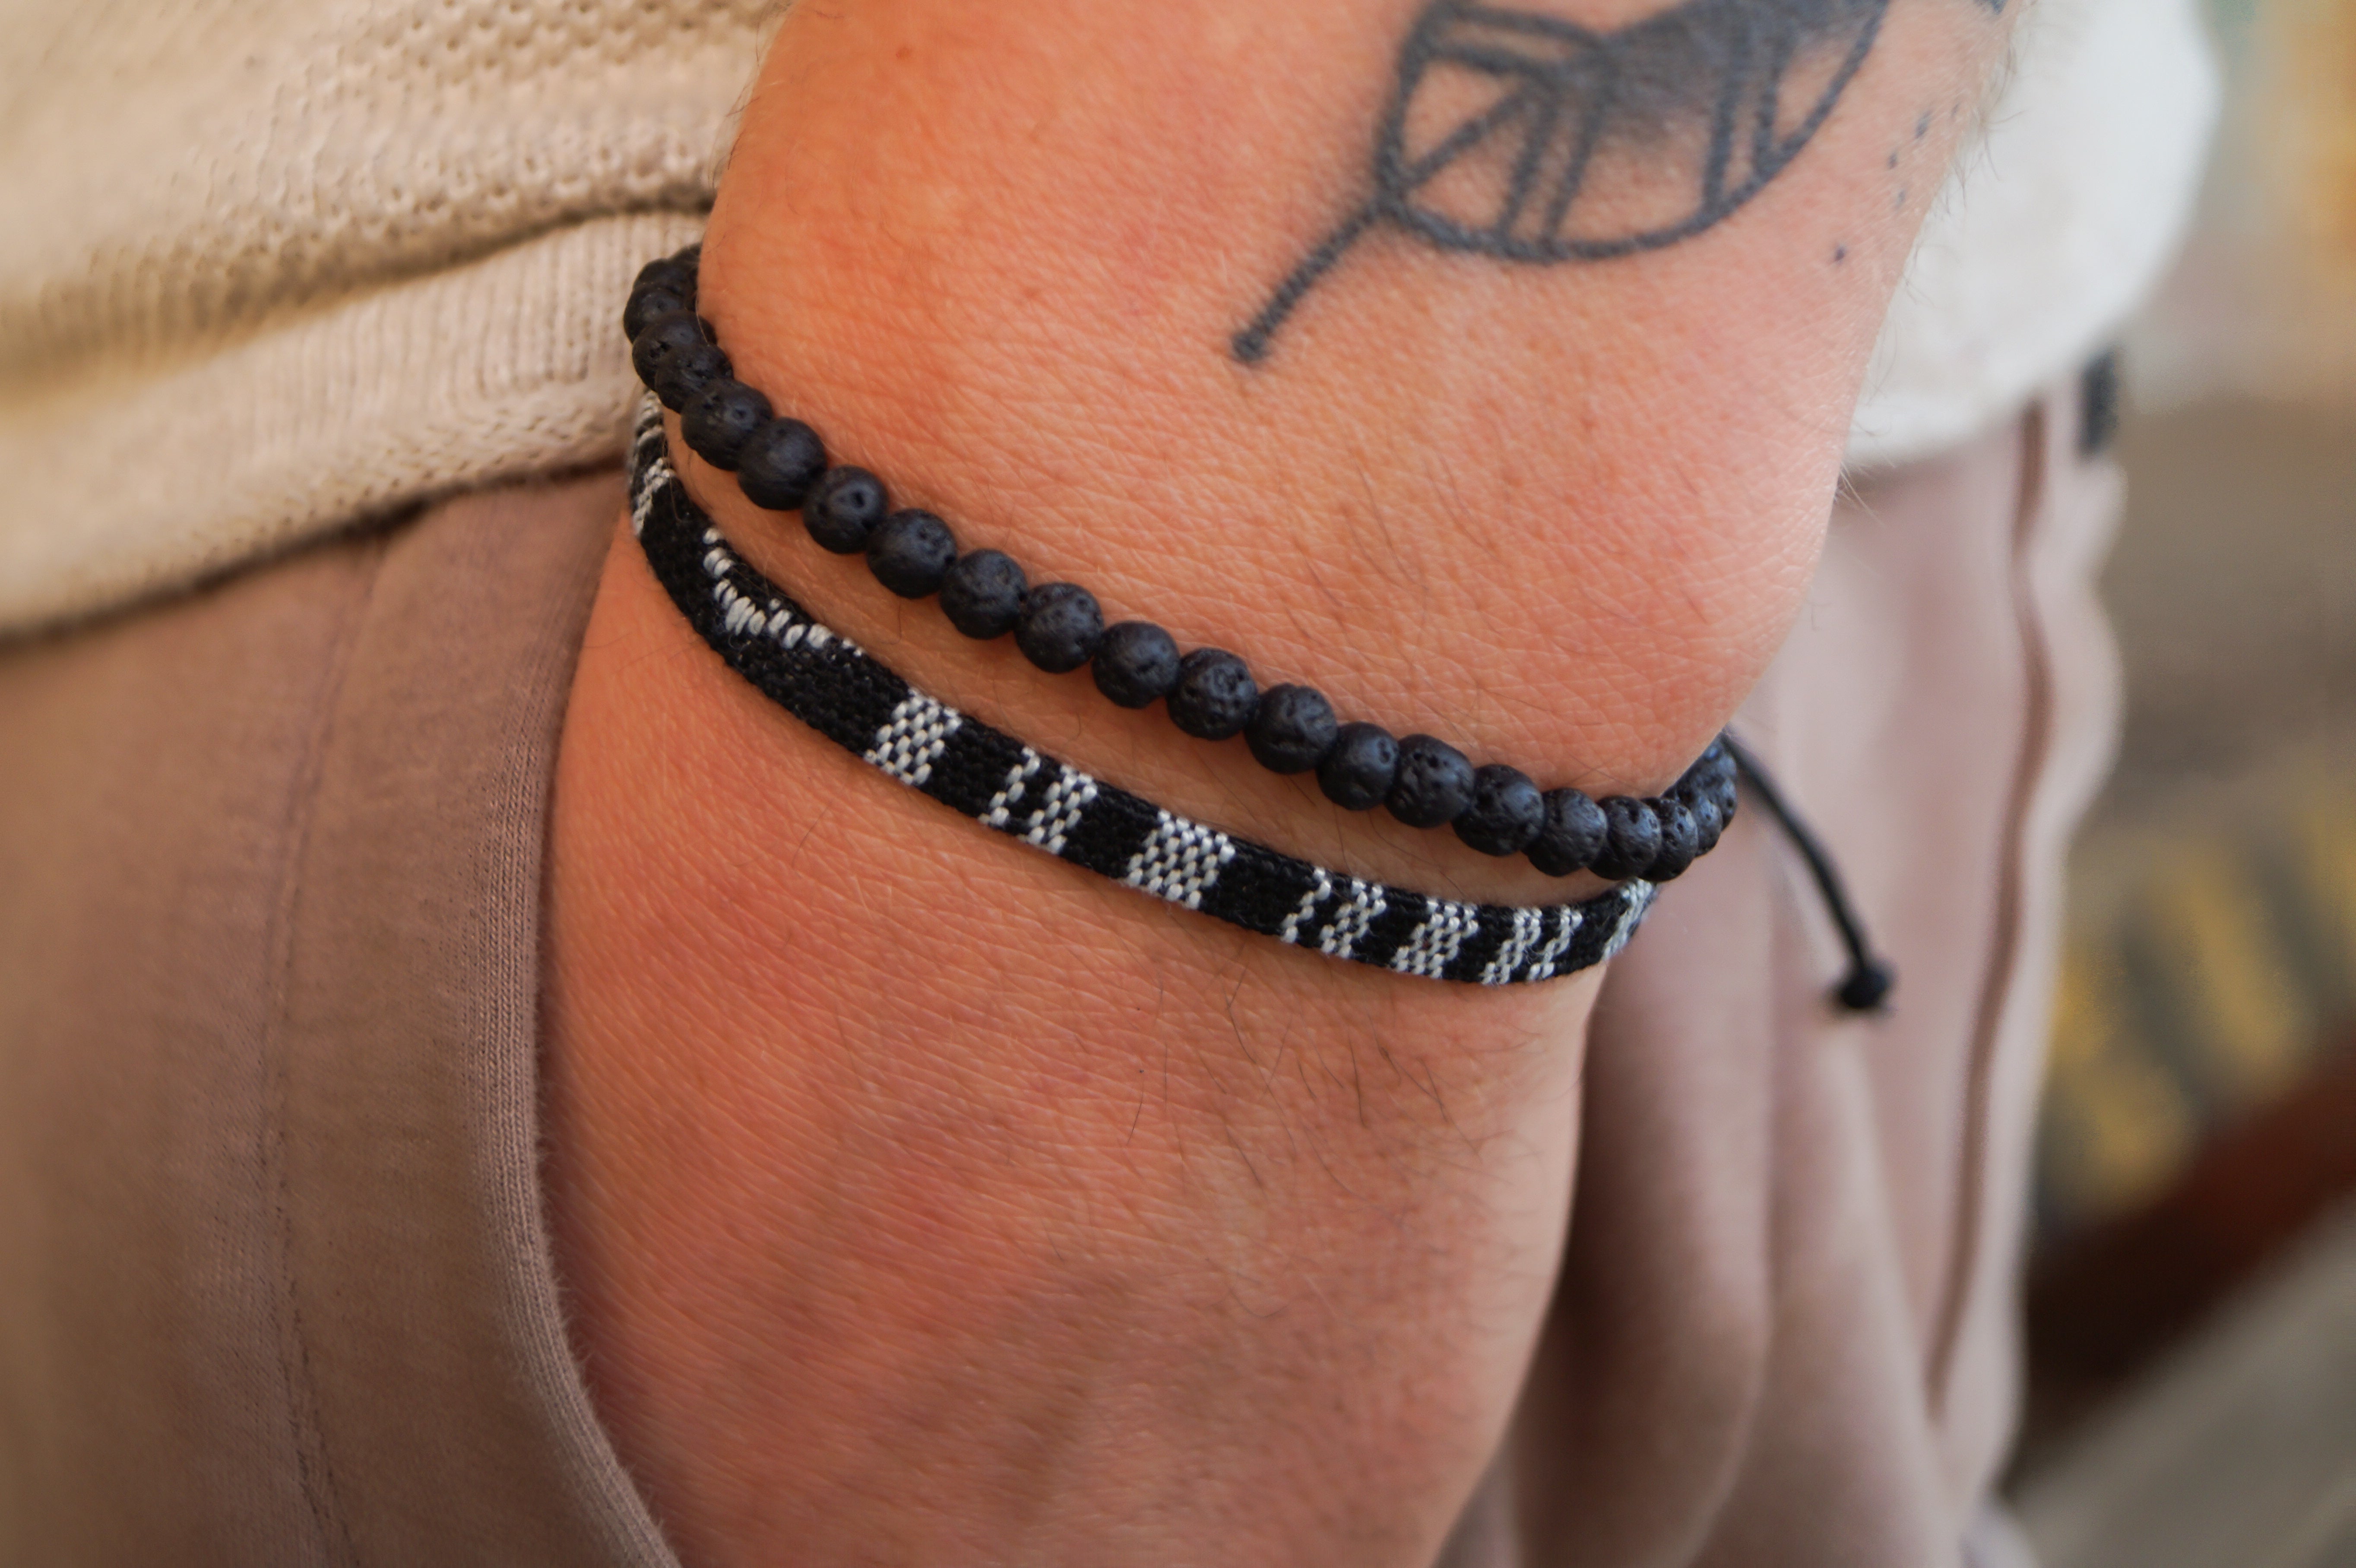 2x Boho Surfer Bracelet Men - Black + Lava Beads